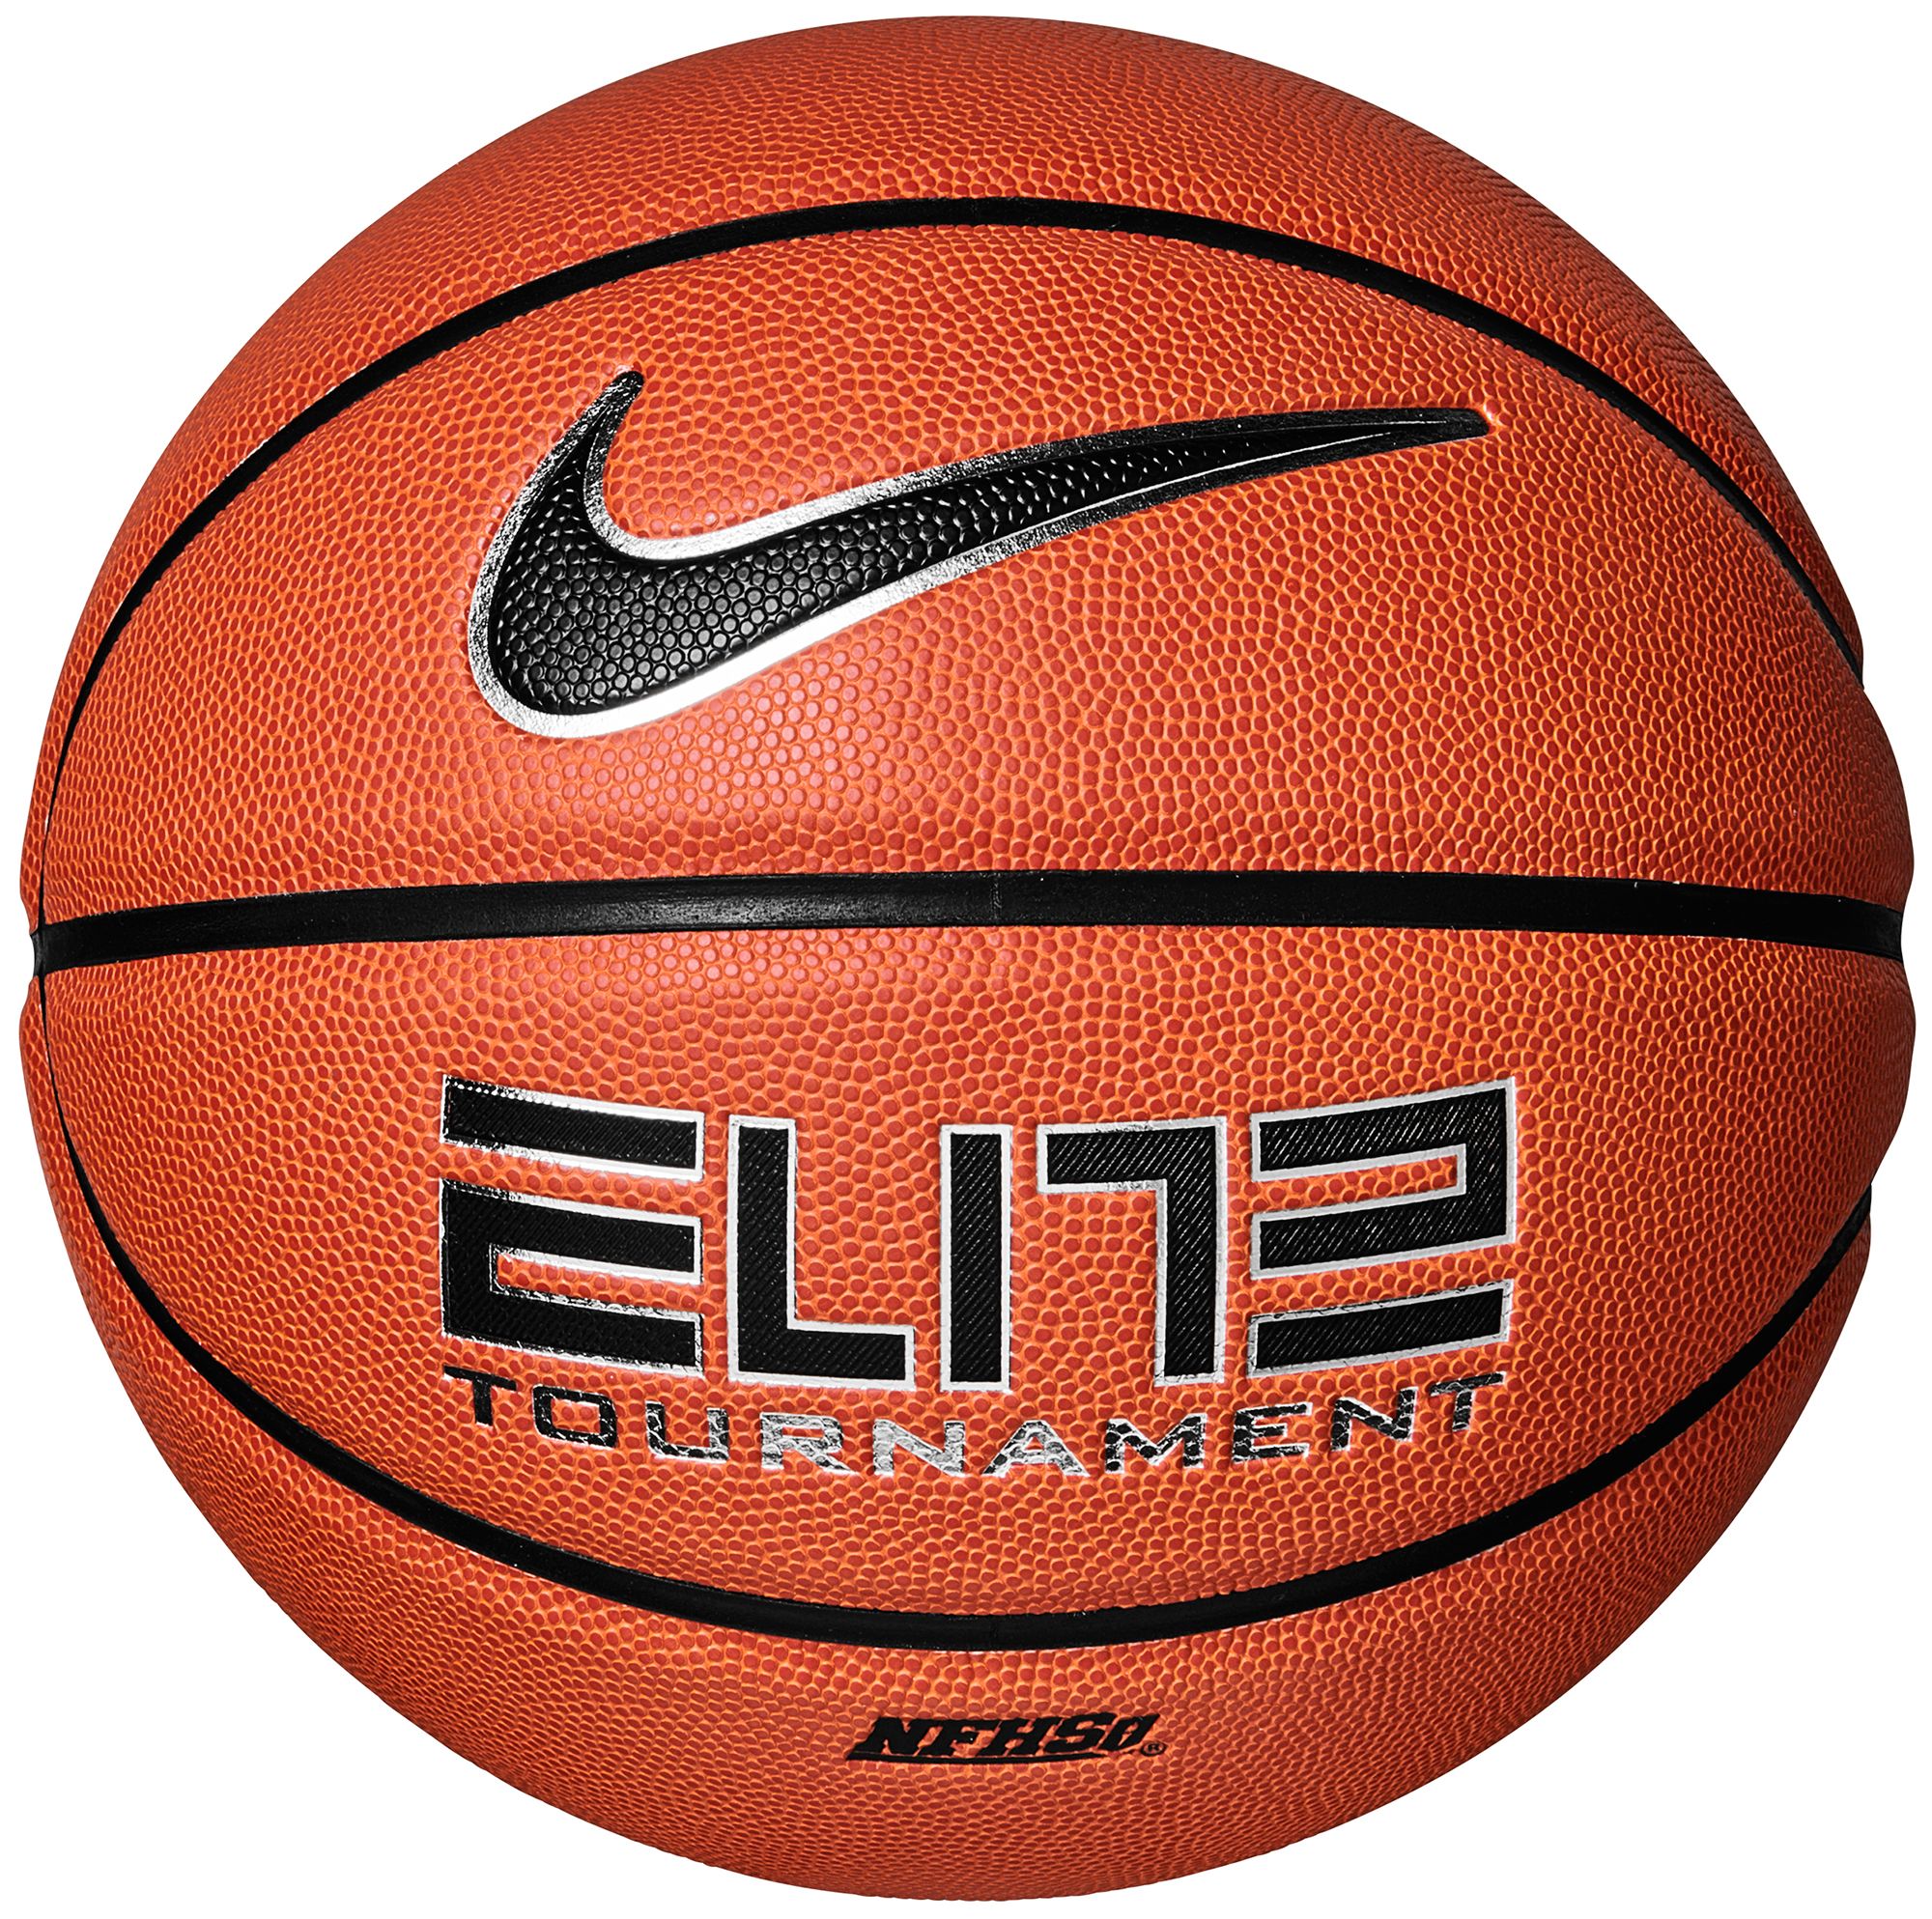 Nike Elite Tournament Basketball (28.5 